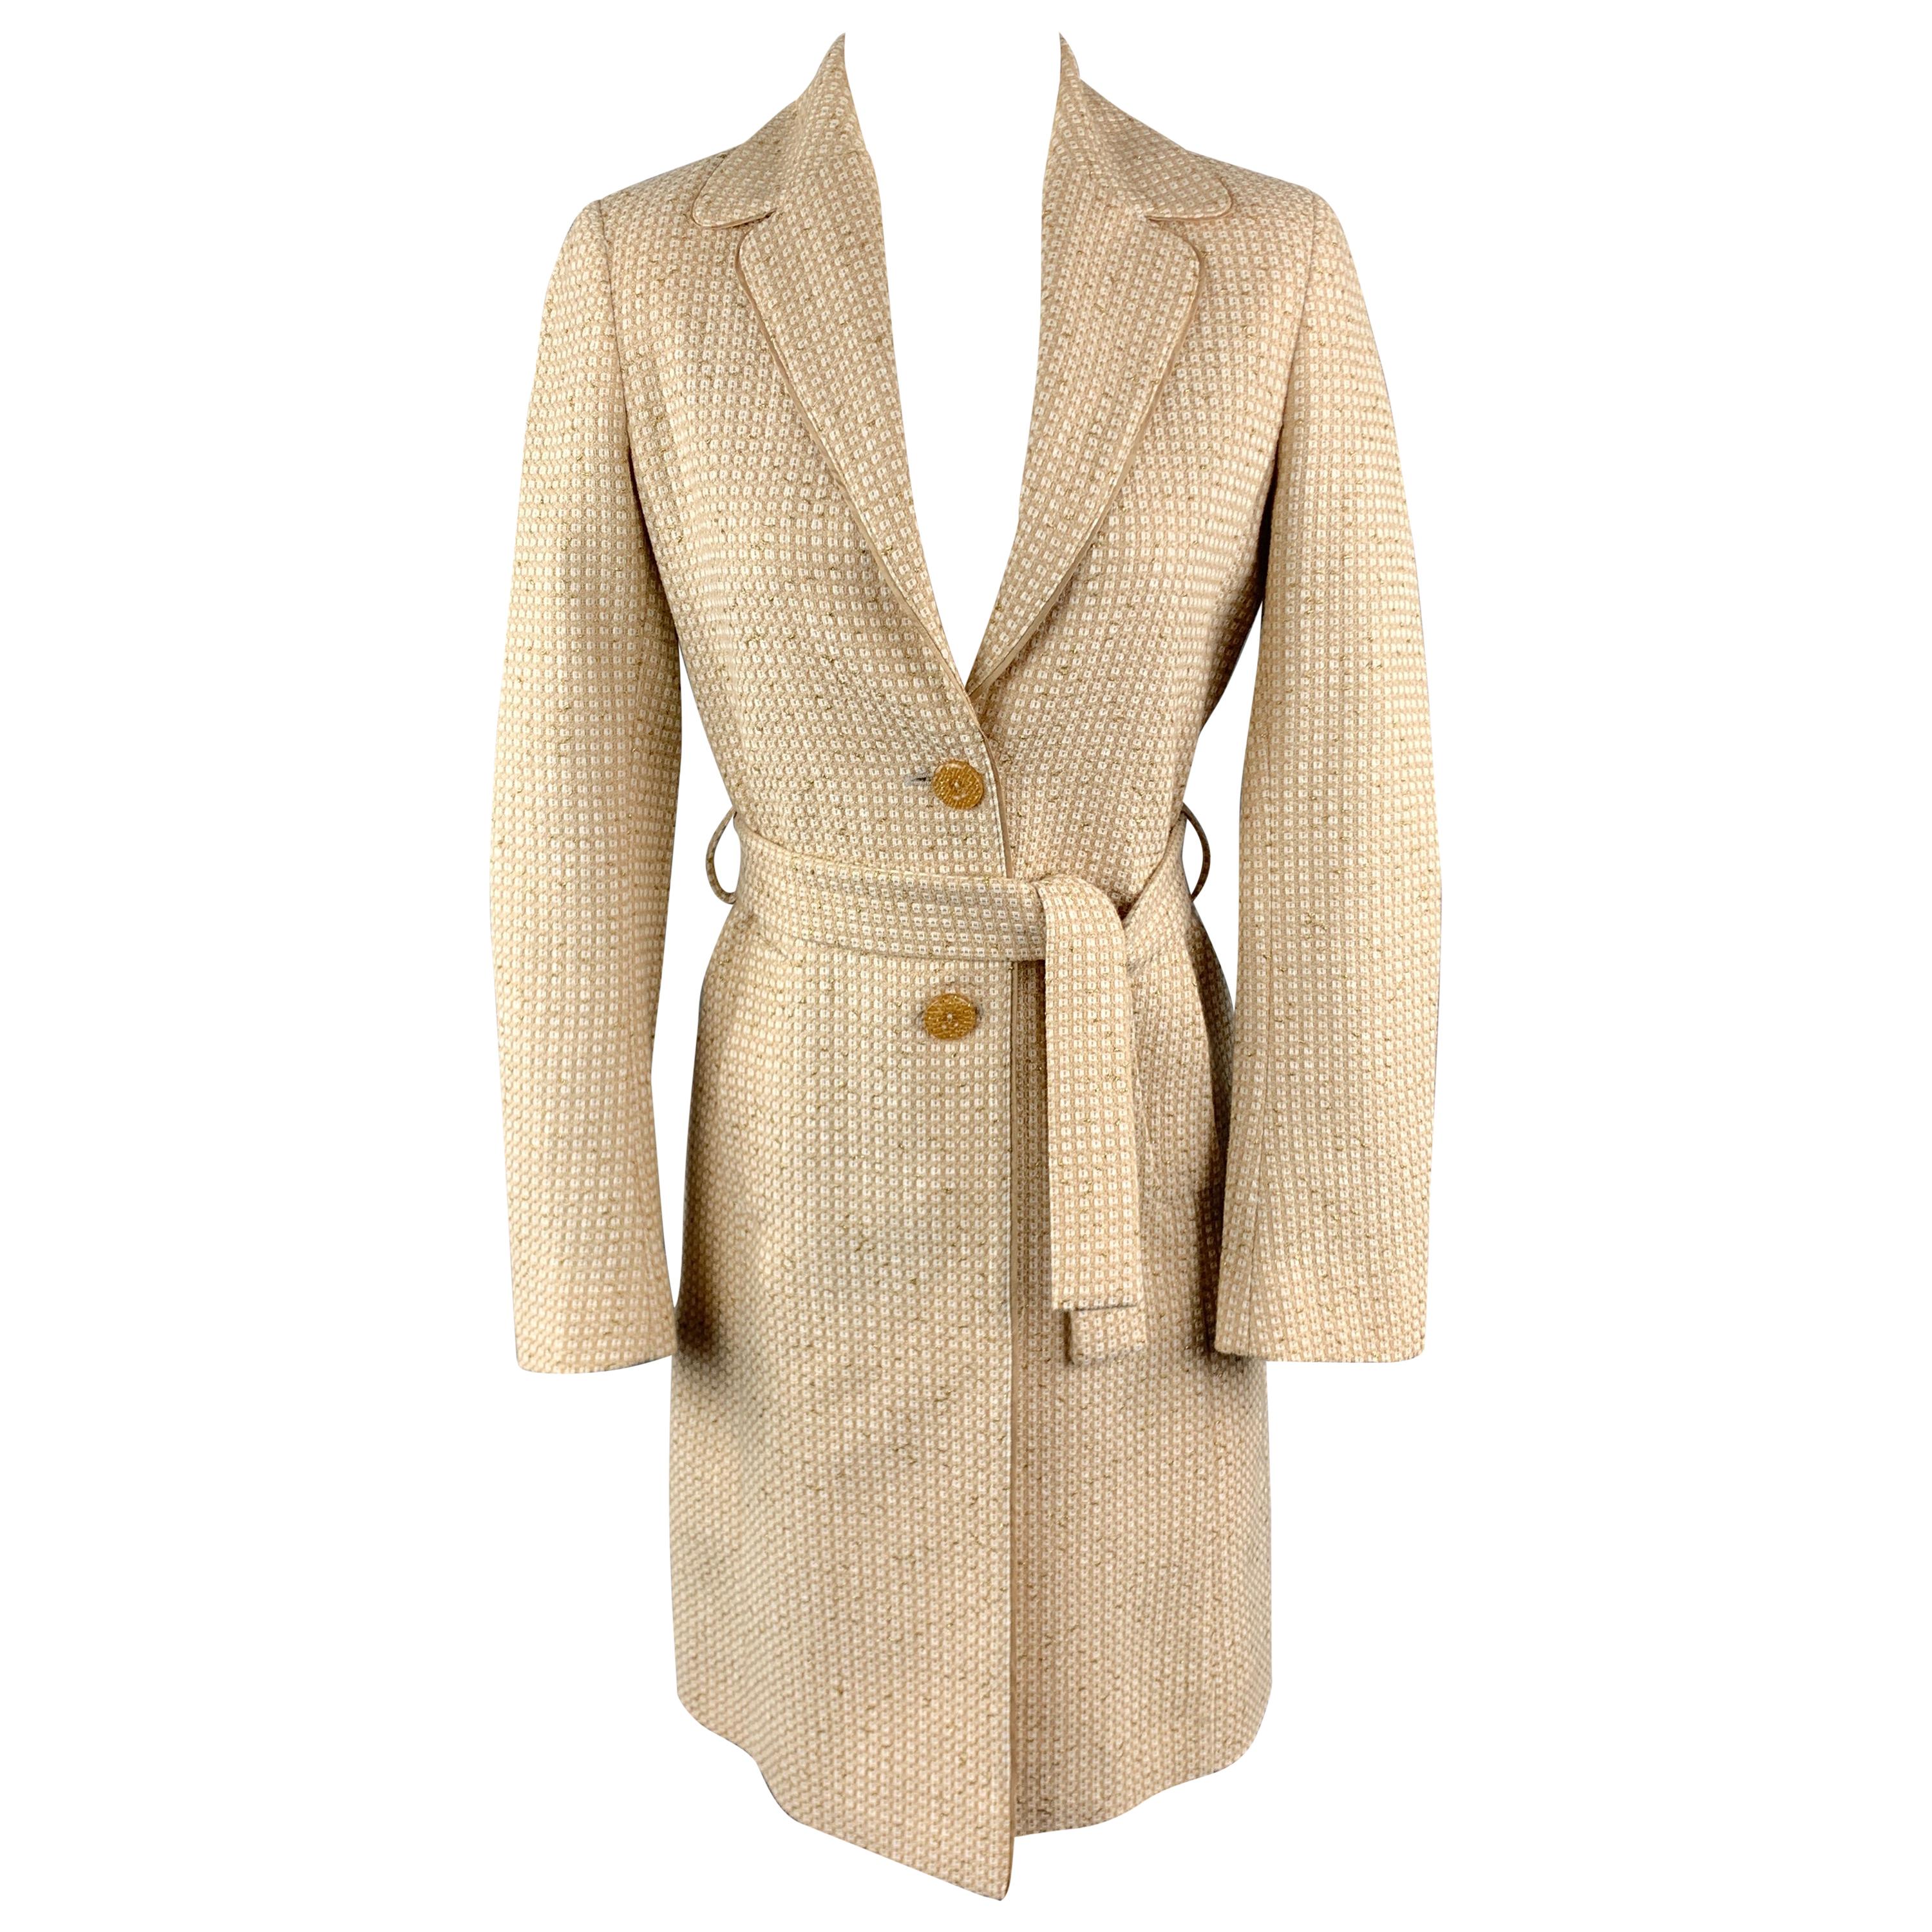 M MISSONI Size 2 Beige Cotton Blend Textured Woven Notch Lapel Belted Coat